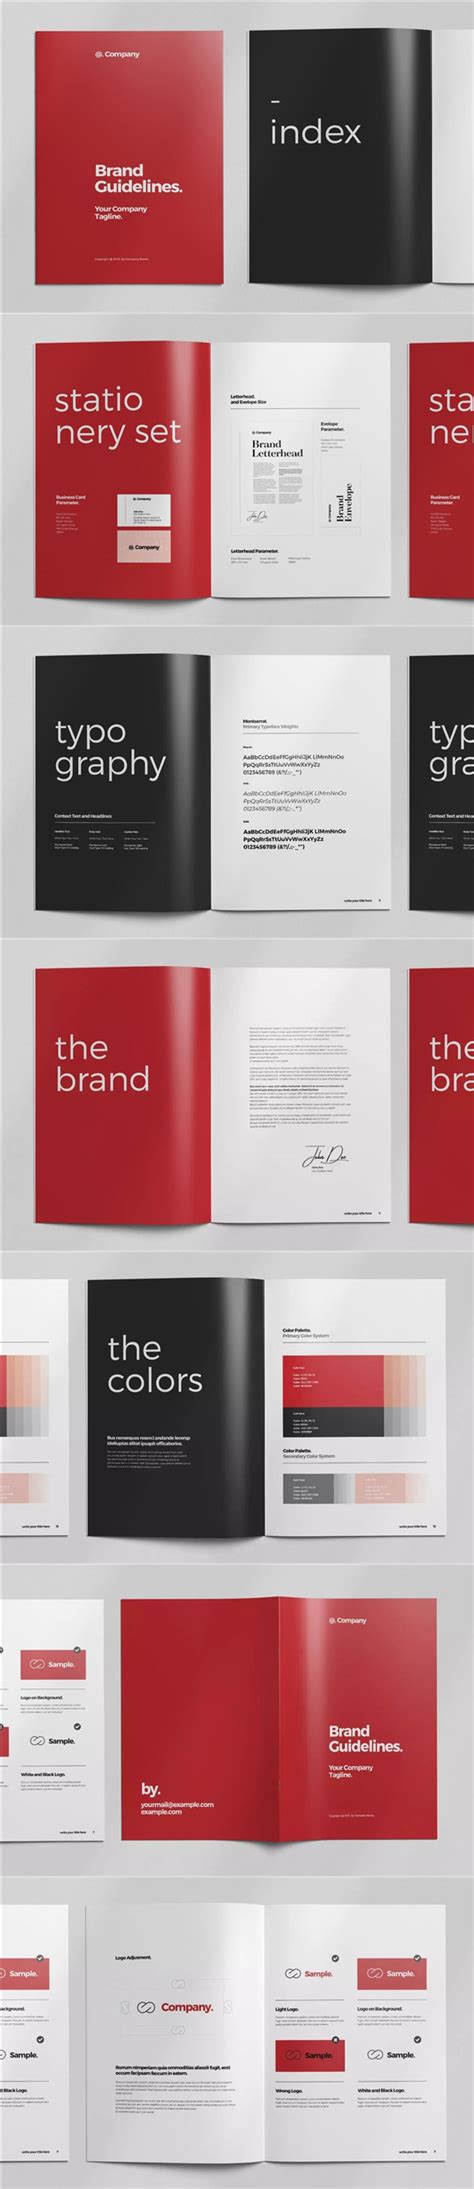 品牌设计|品牌VI设计三要素|品牌视觉设计|专业品牌VI设计